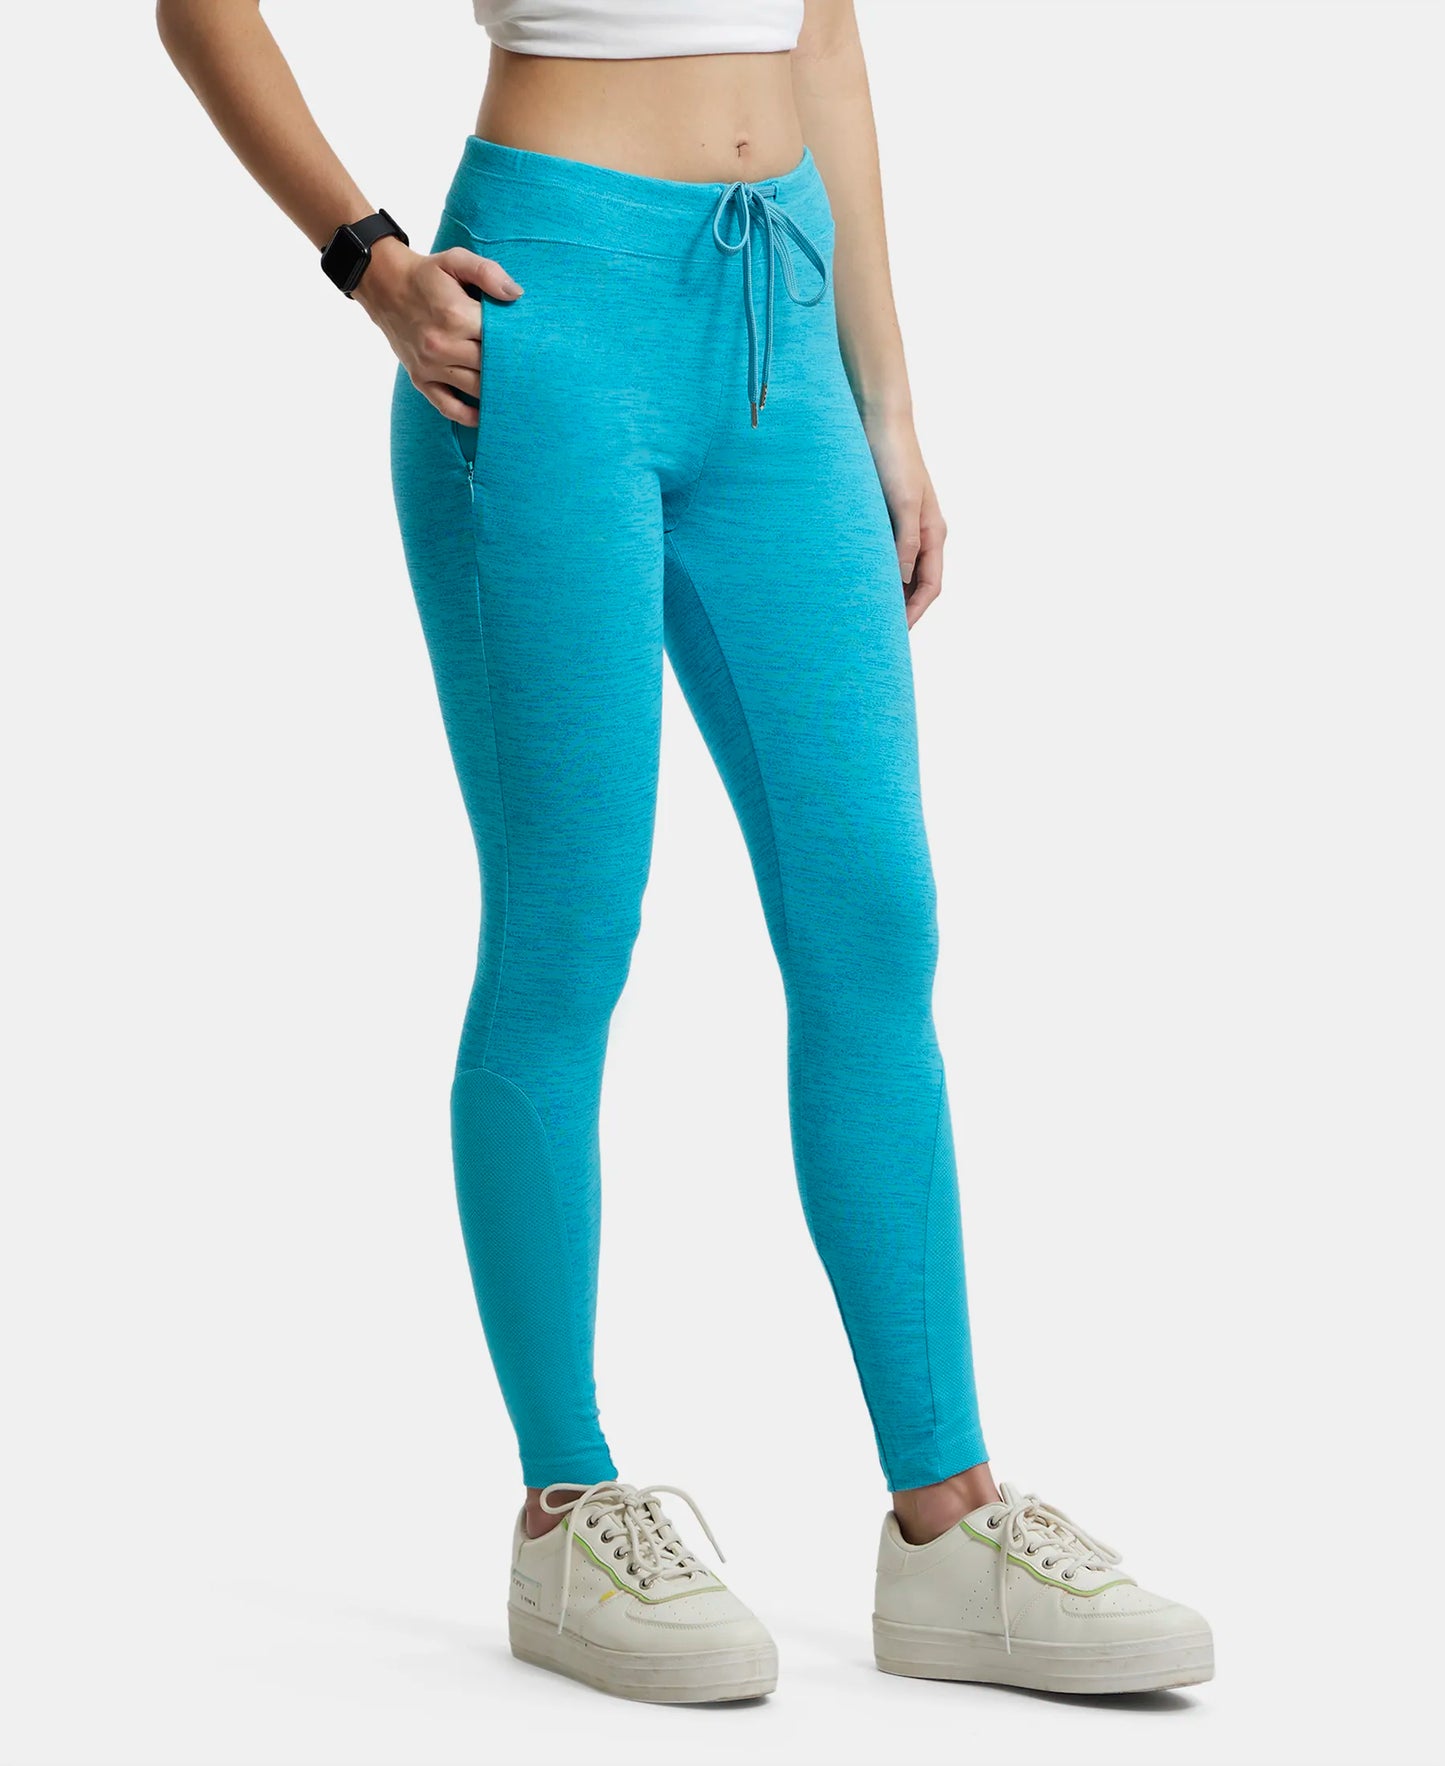 Super Combed Cotton Elastane Yoga Pants with Side Zipper Pocket - J Teal Marl-2